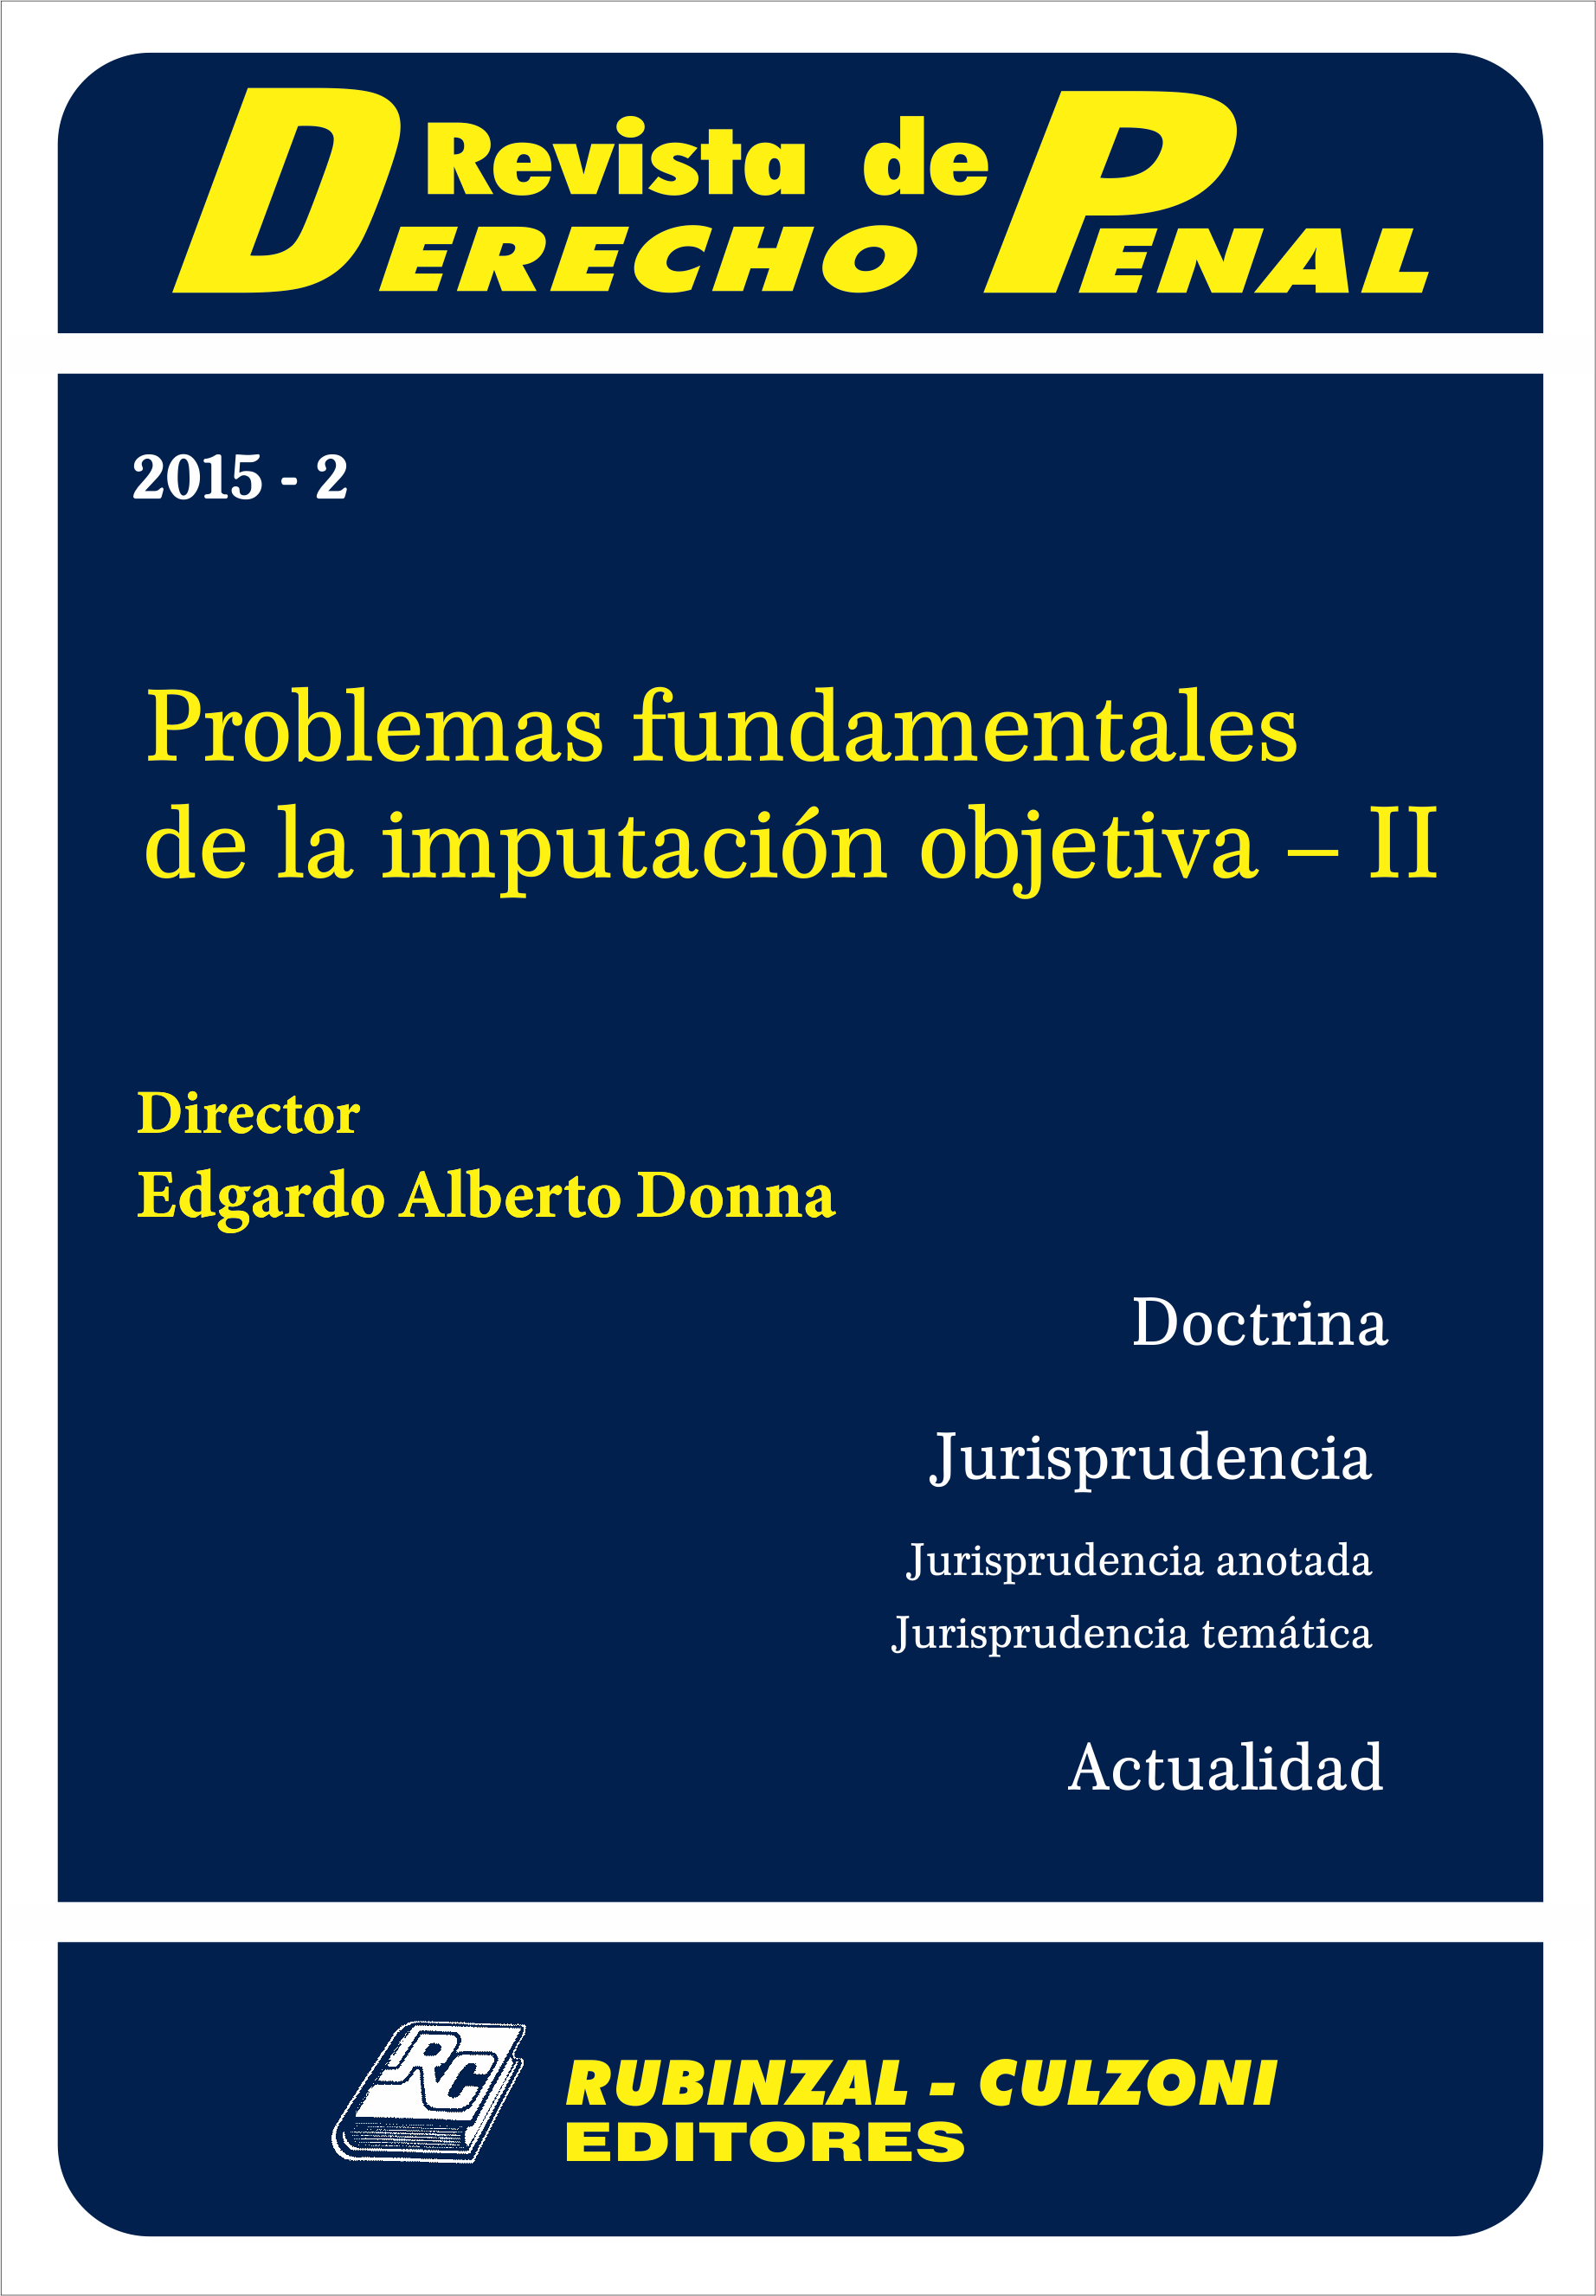 Revista de Derecho Penal - Problemas fundamentales de la imputación objetiva - II